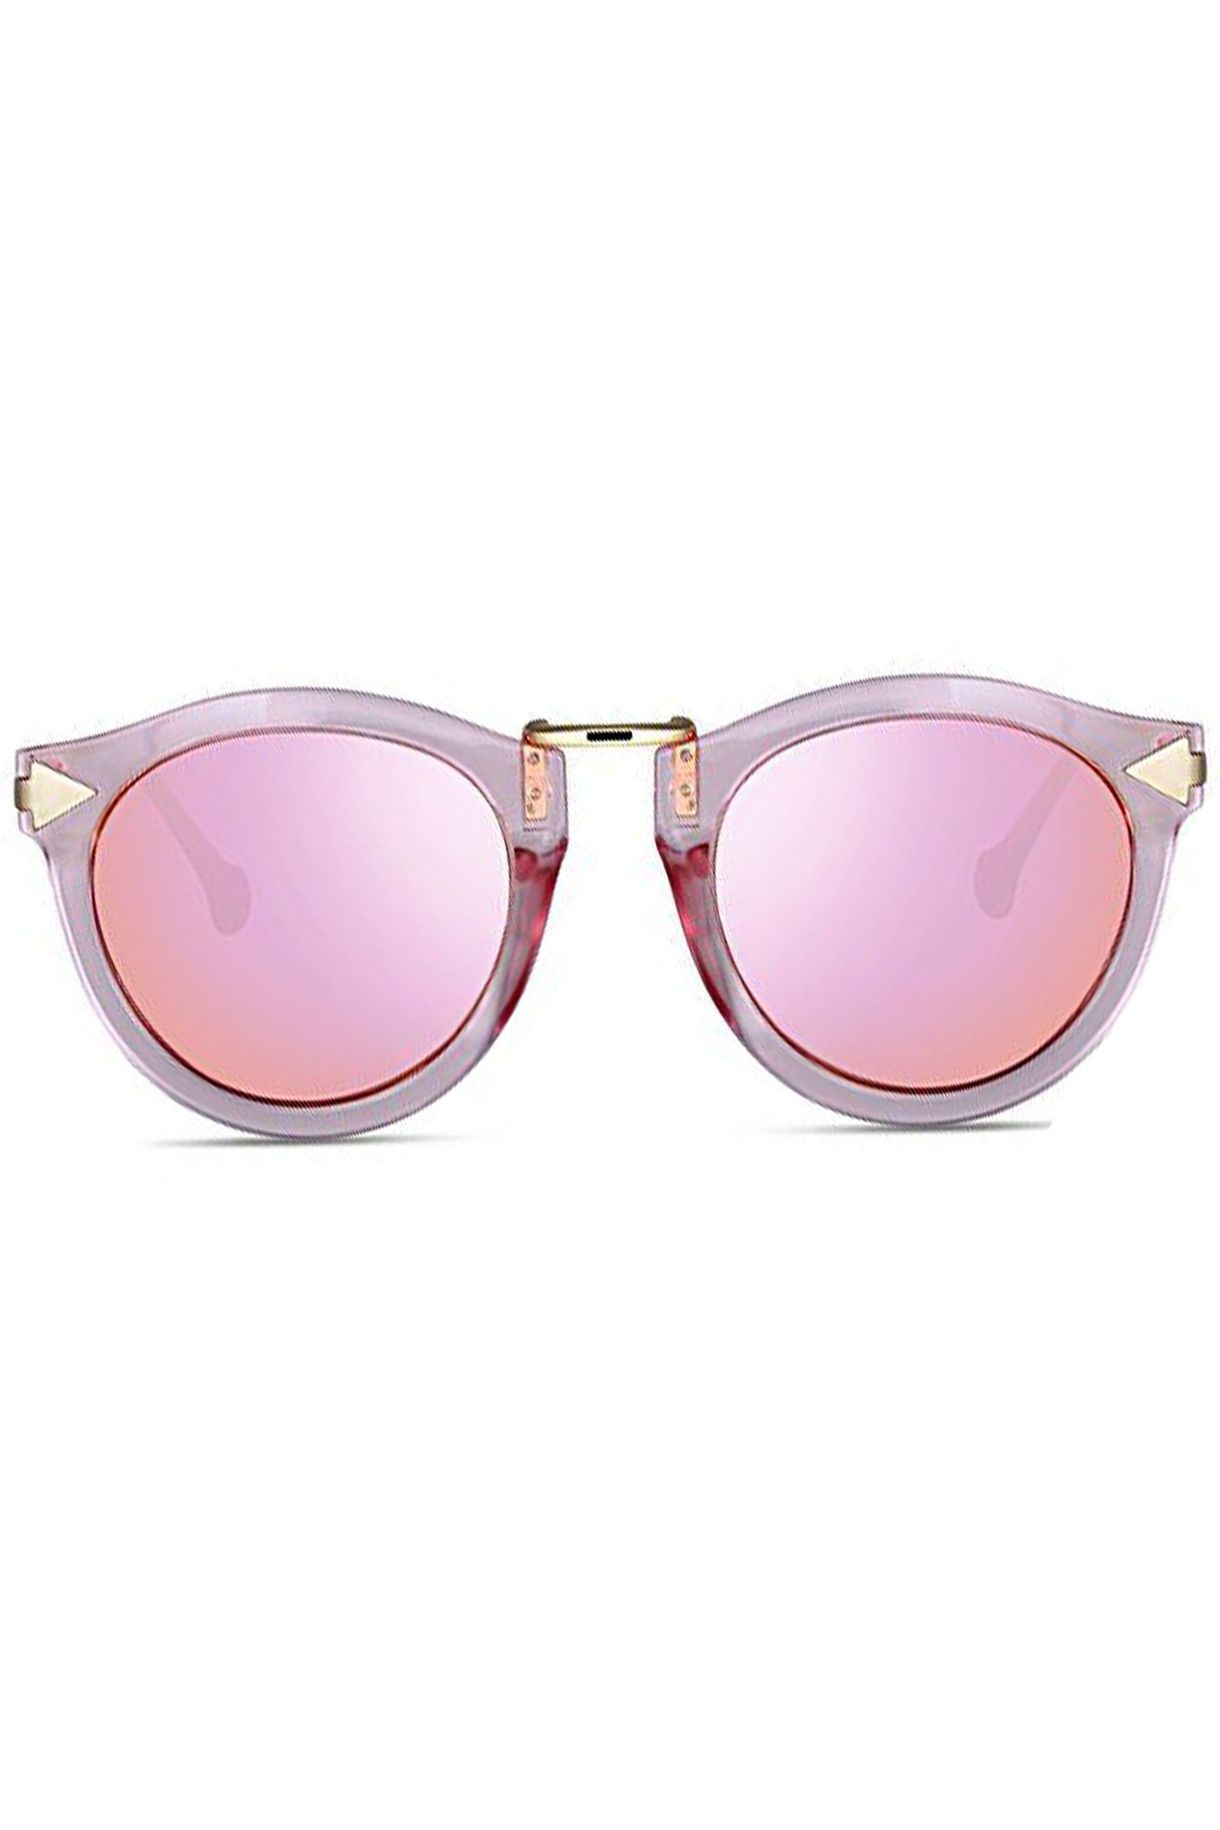 Rožnata sončna očala